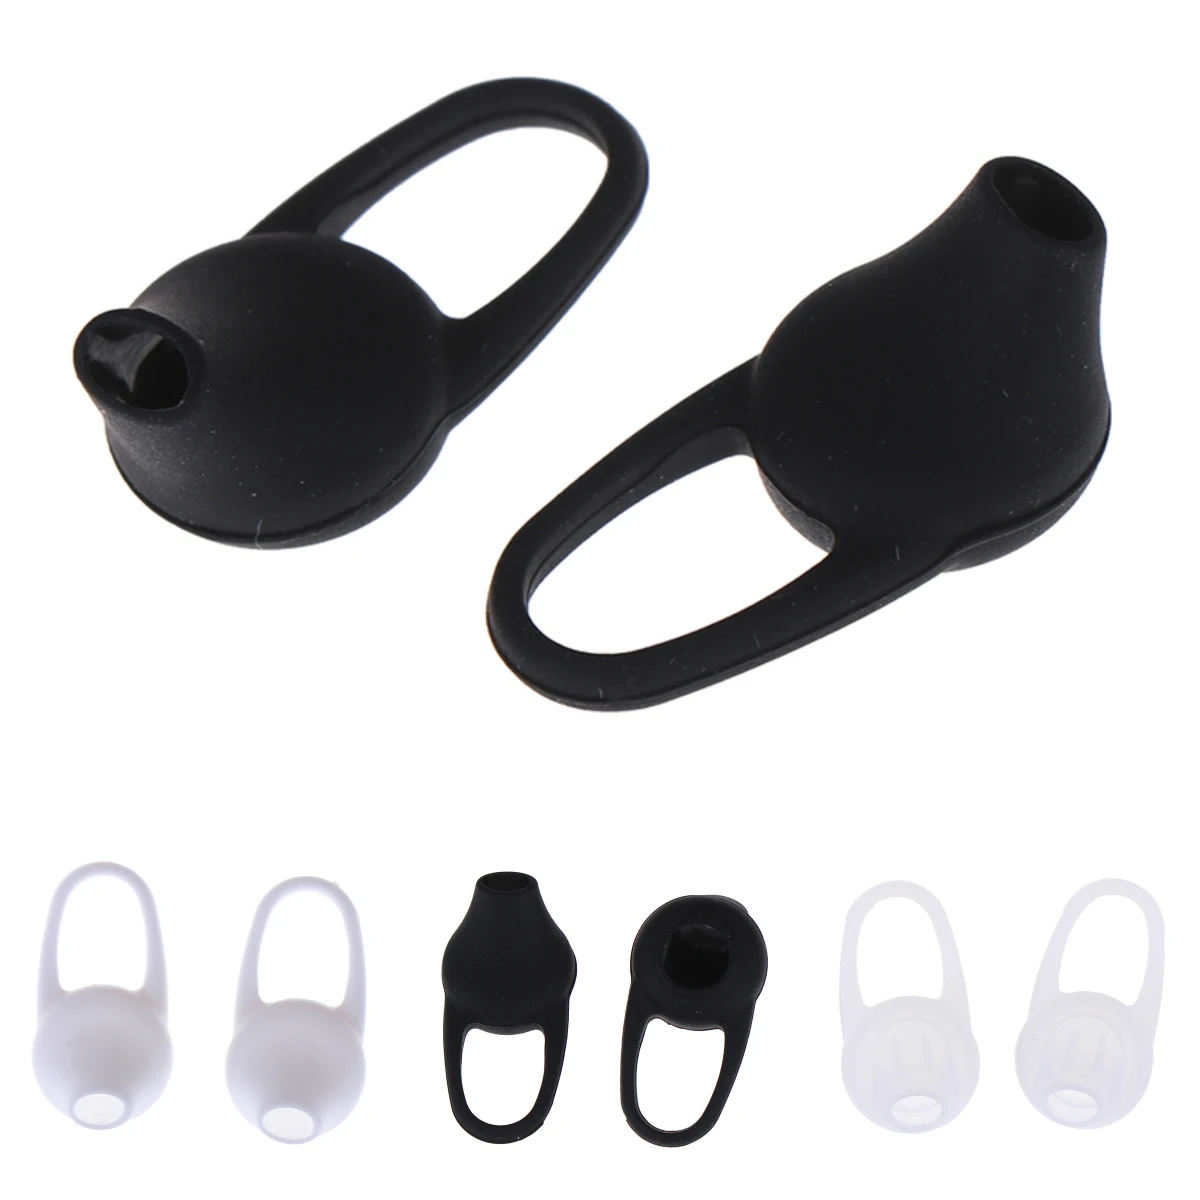 10pcs de Silicone Em-Ear Fone de ouvido Cobre Earbud Bud Dicas de Fones de ouvido Auricular dicas de Tampão de Orelha Almofadas de amortecimento Para Fone de ouvido Bluetooth